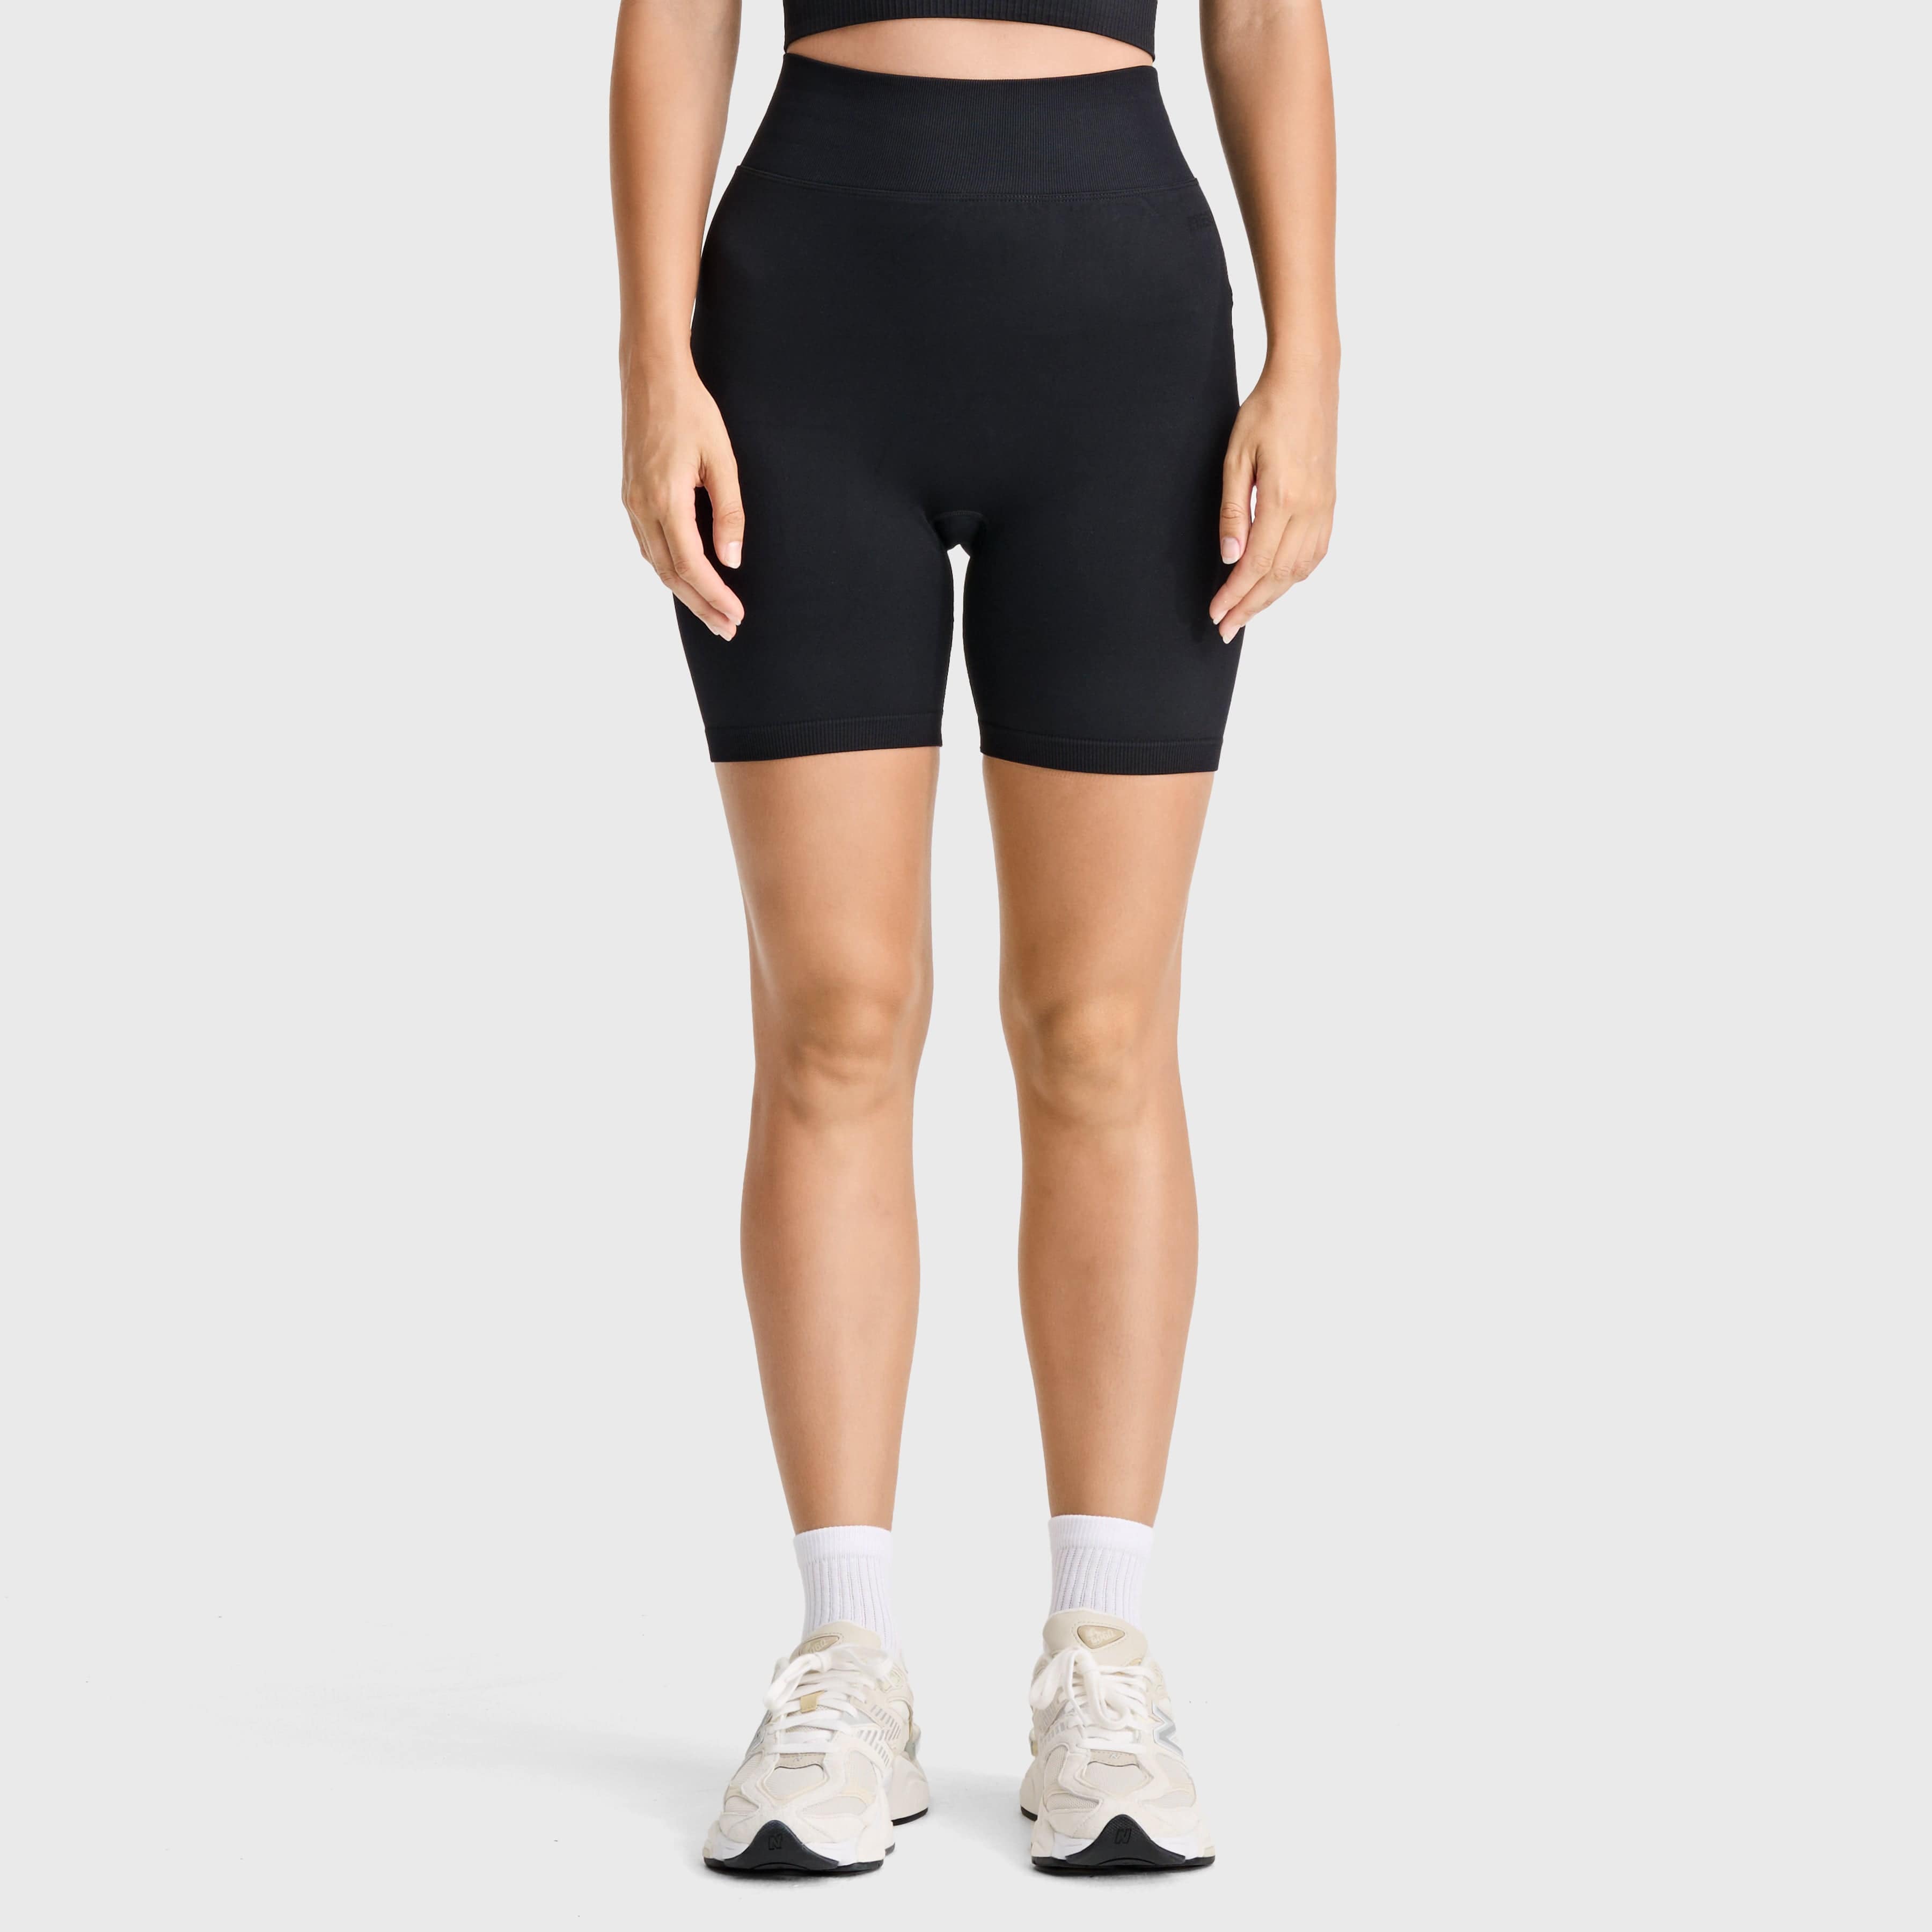 Seamless Biker Shorts - High Waisted - Black 3